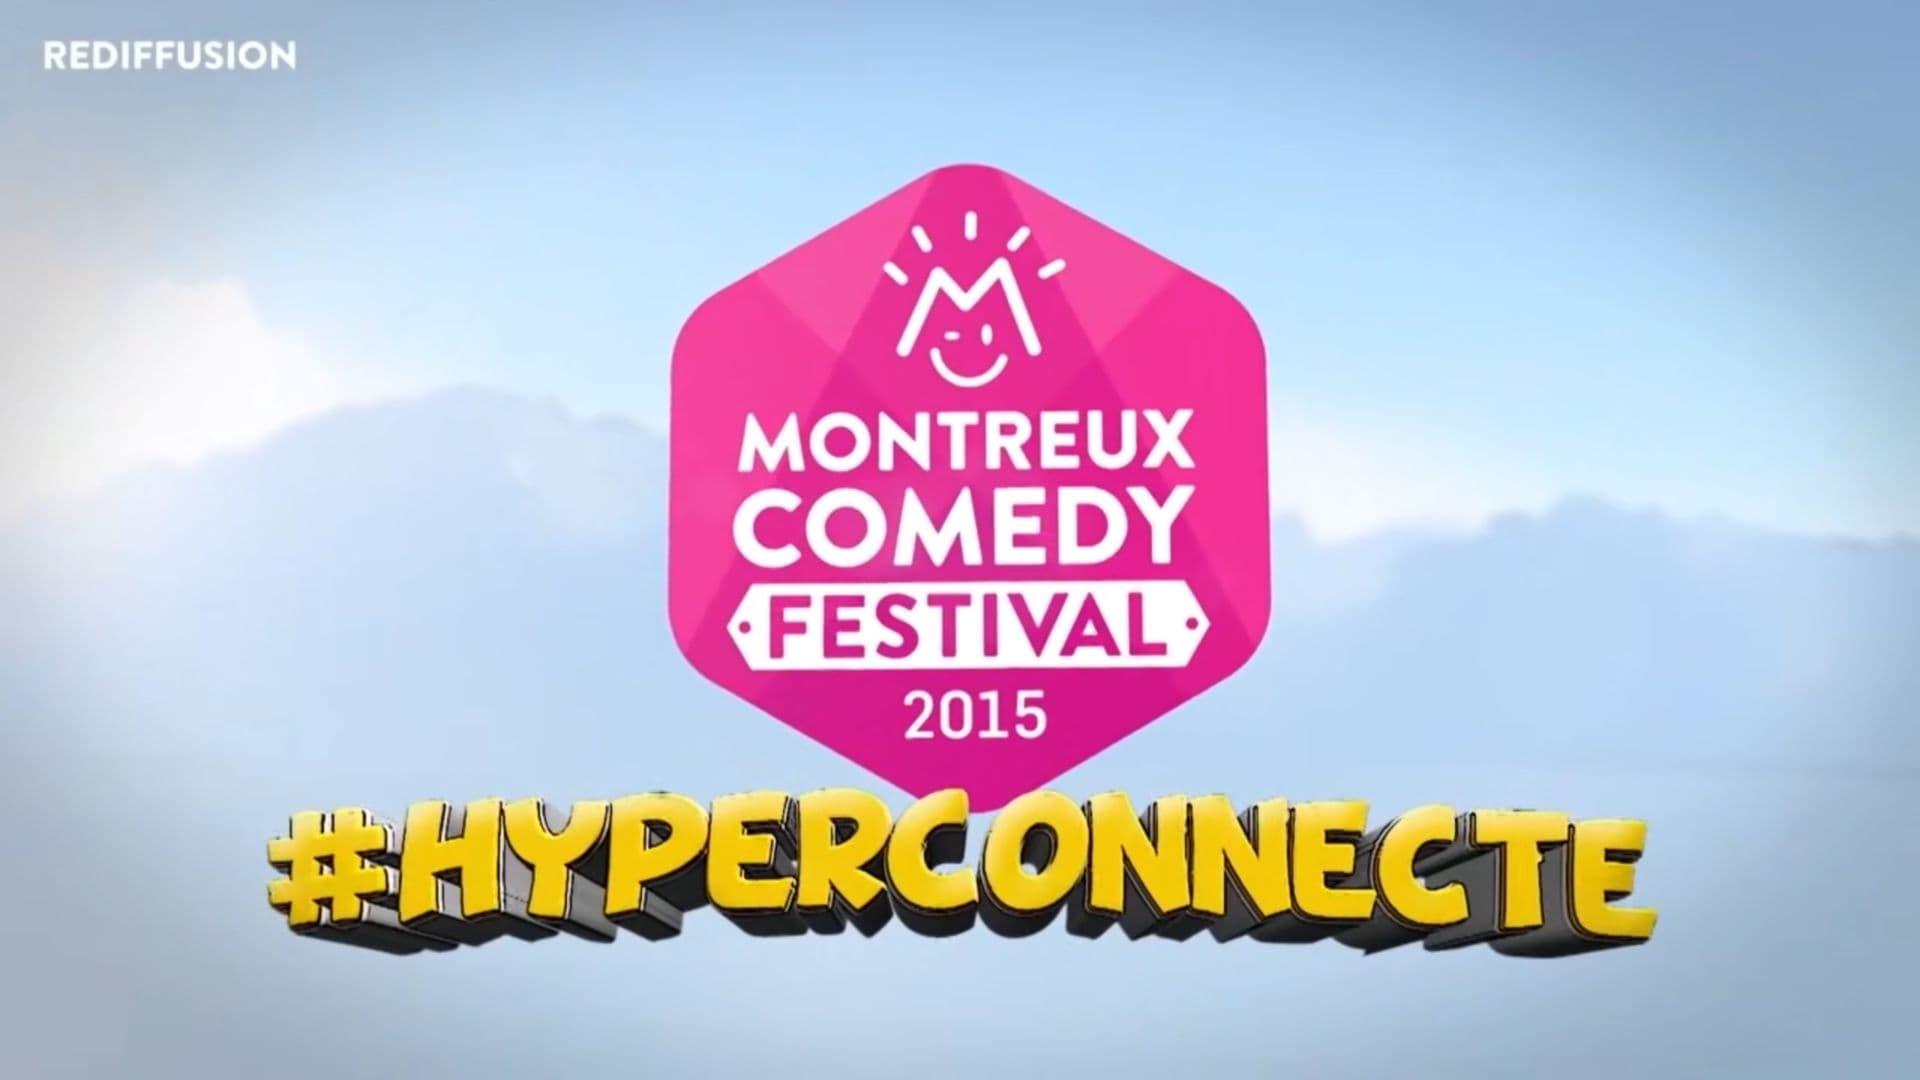 Montreux Comedy Festival 2015 - #hyperconnecté backdrop